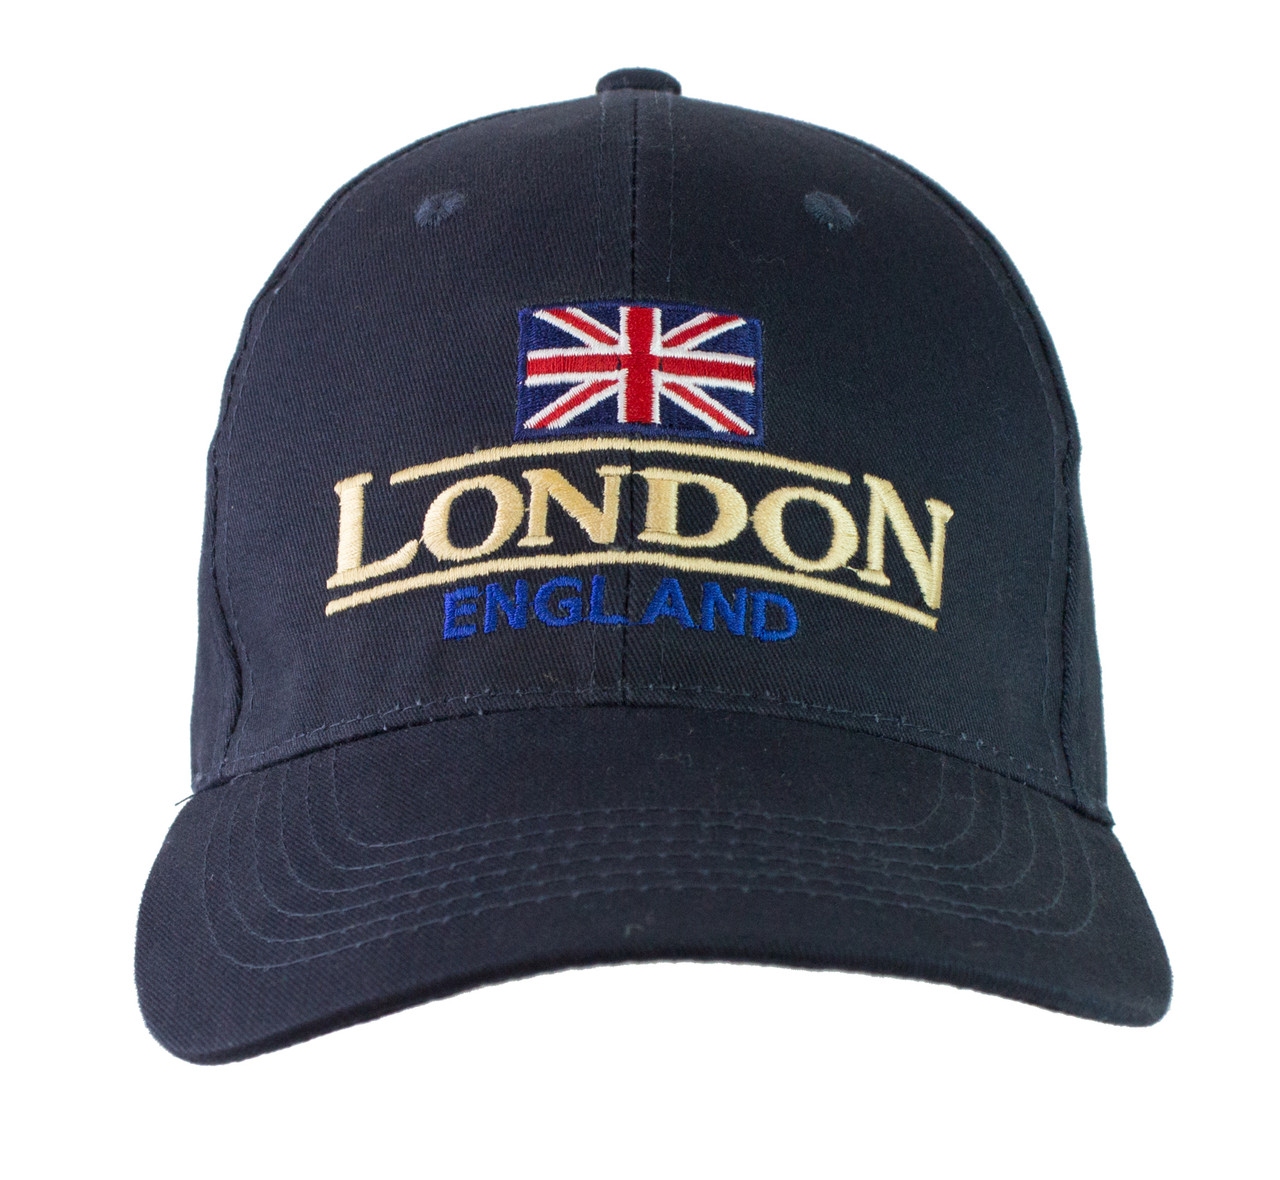 LONDON ENG HARVARD CAP - The Gift Wholesaler